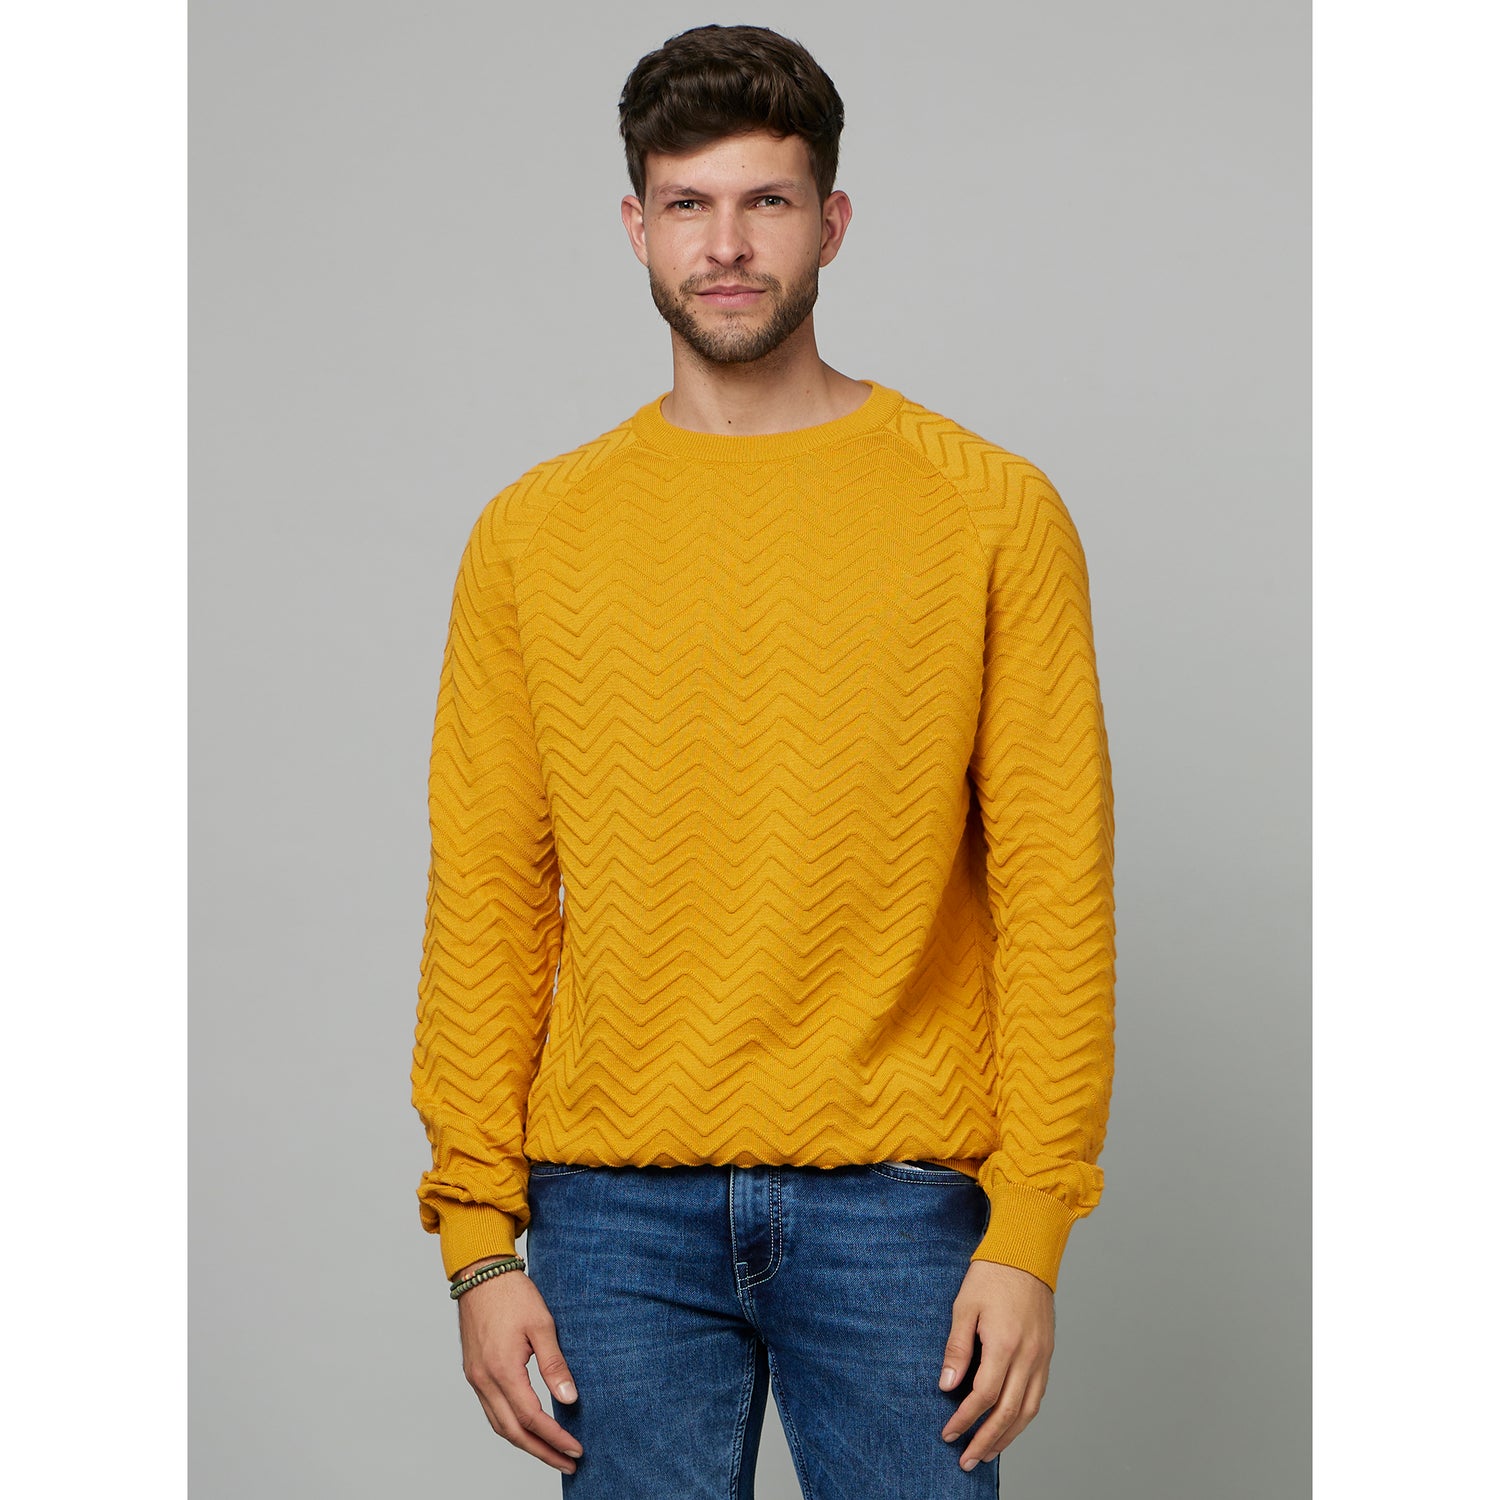 Yellow Chevron Self Design Cotton Pullover Sweater (FECHEVRON)